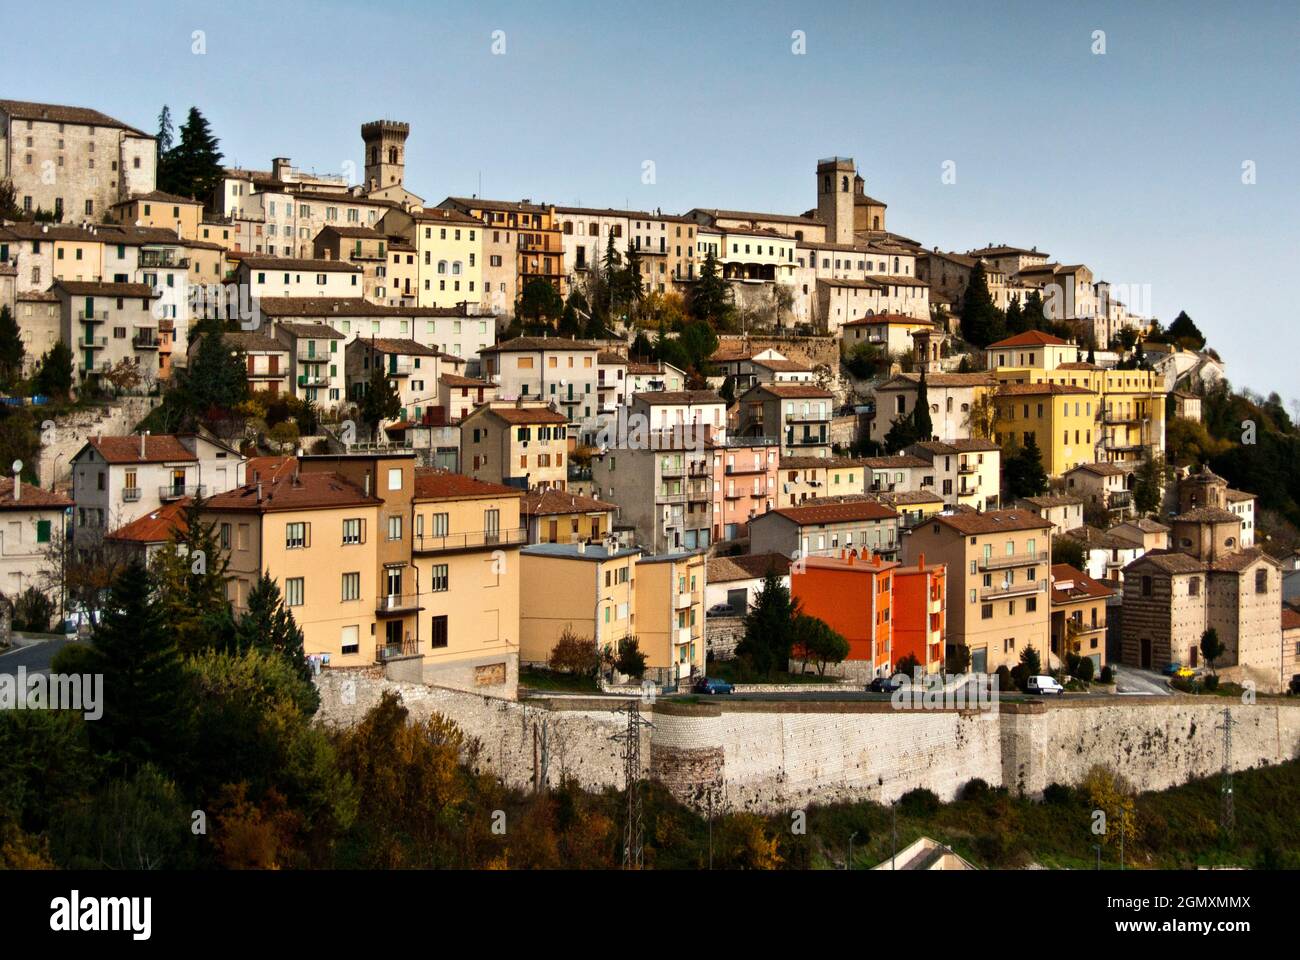 View, Arcevia, Ancona, Marche, Italy, Europe Stock Photo